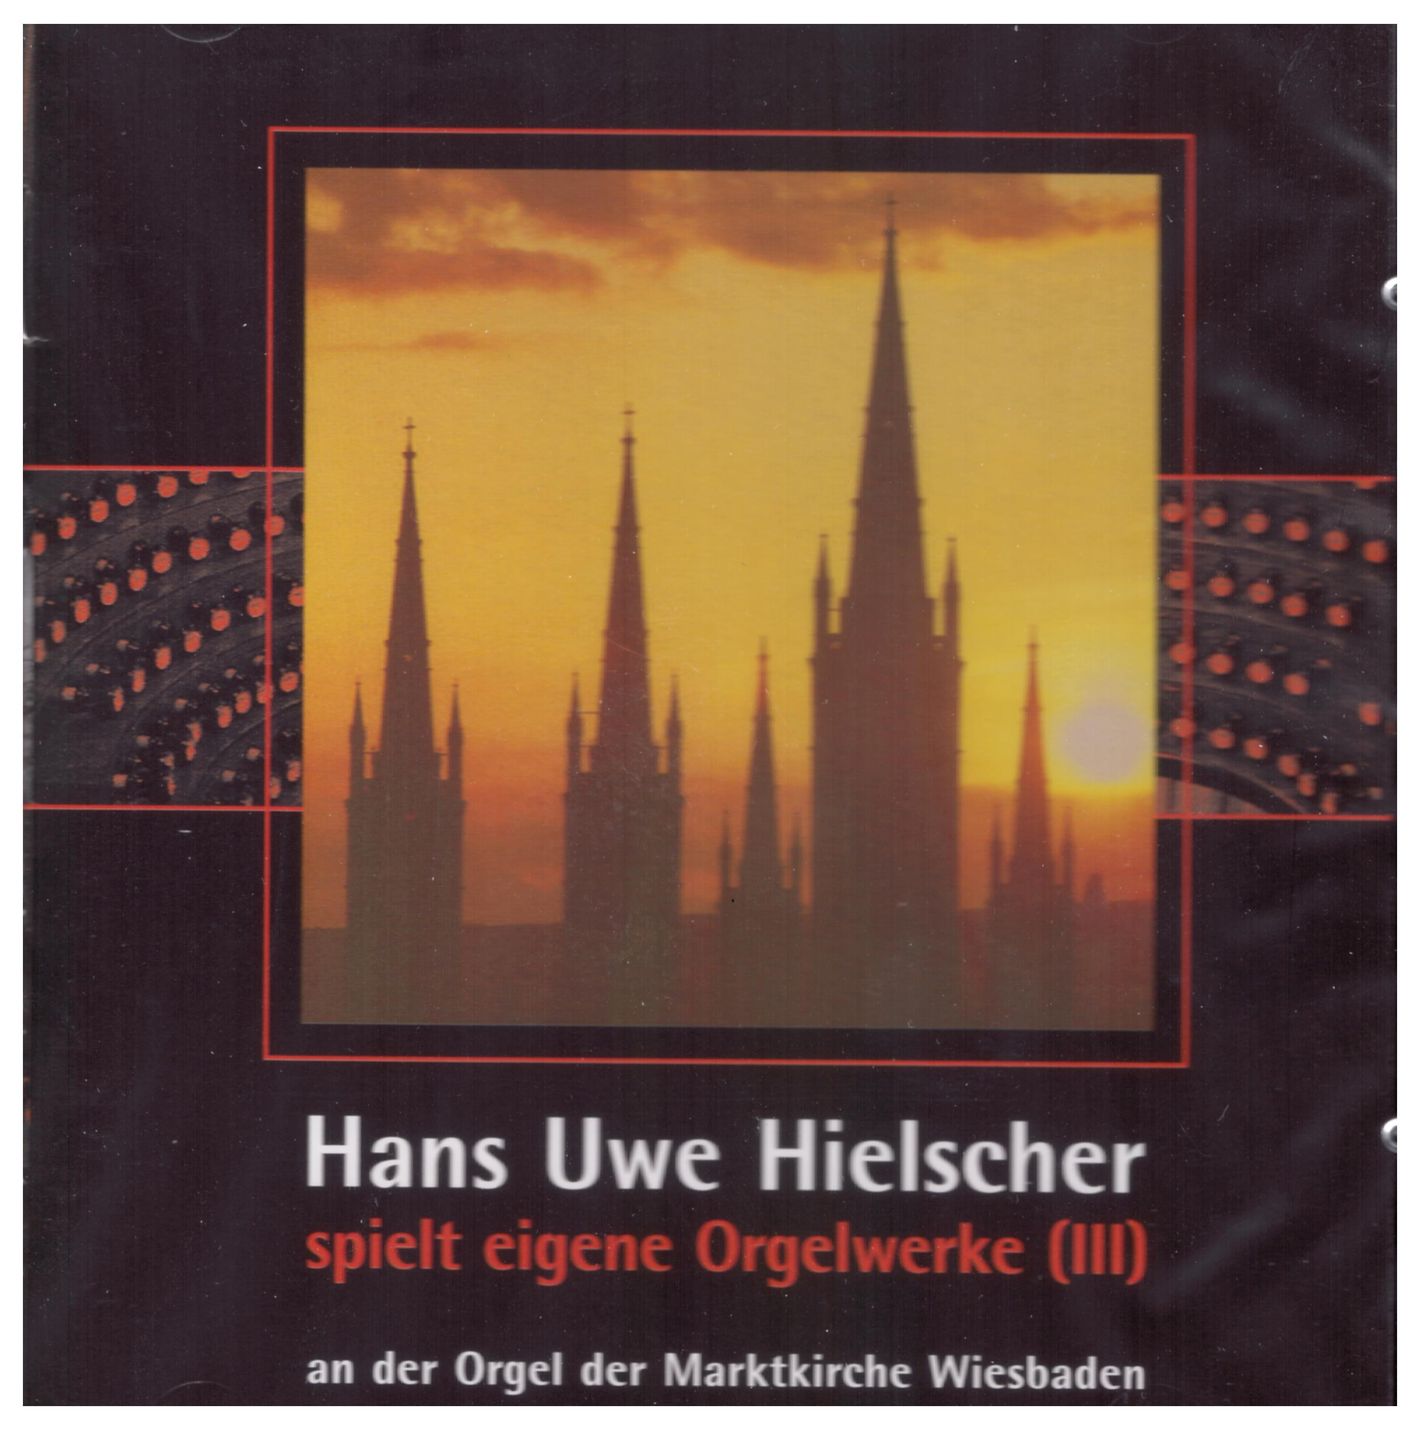 Hans Uwe Hielscher spielt eigene Orgelwerke (III)